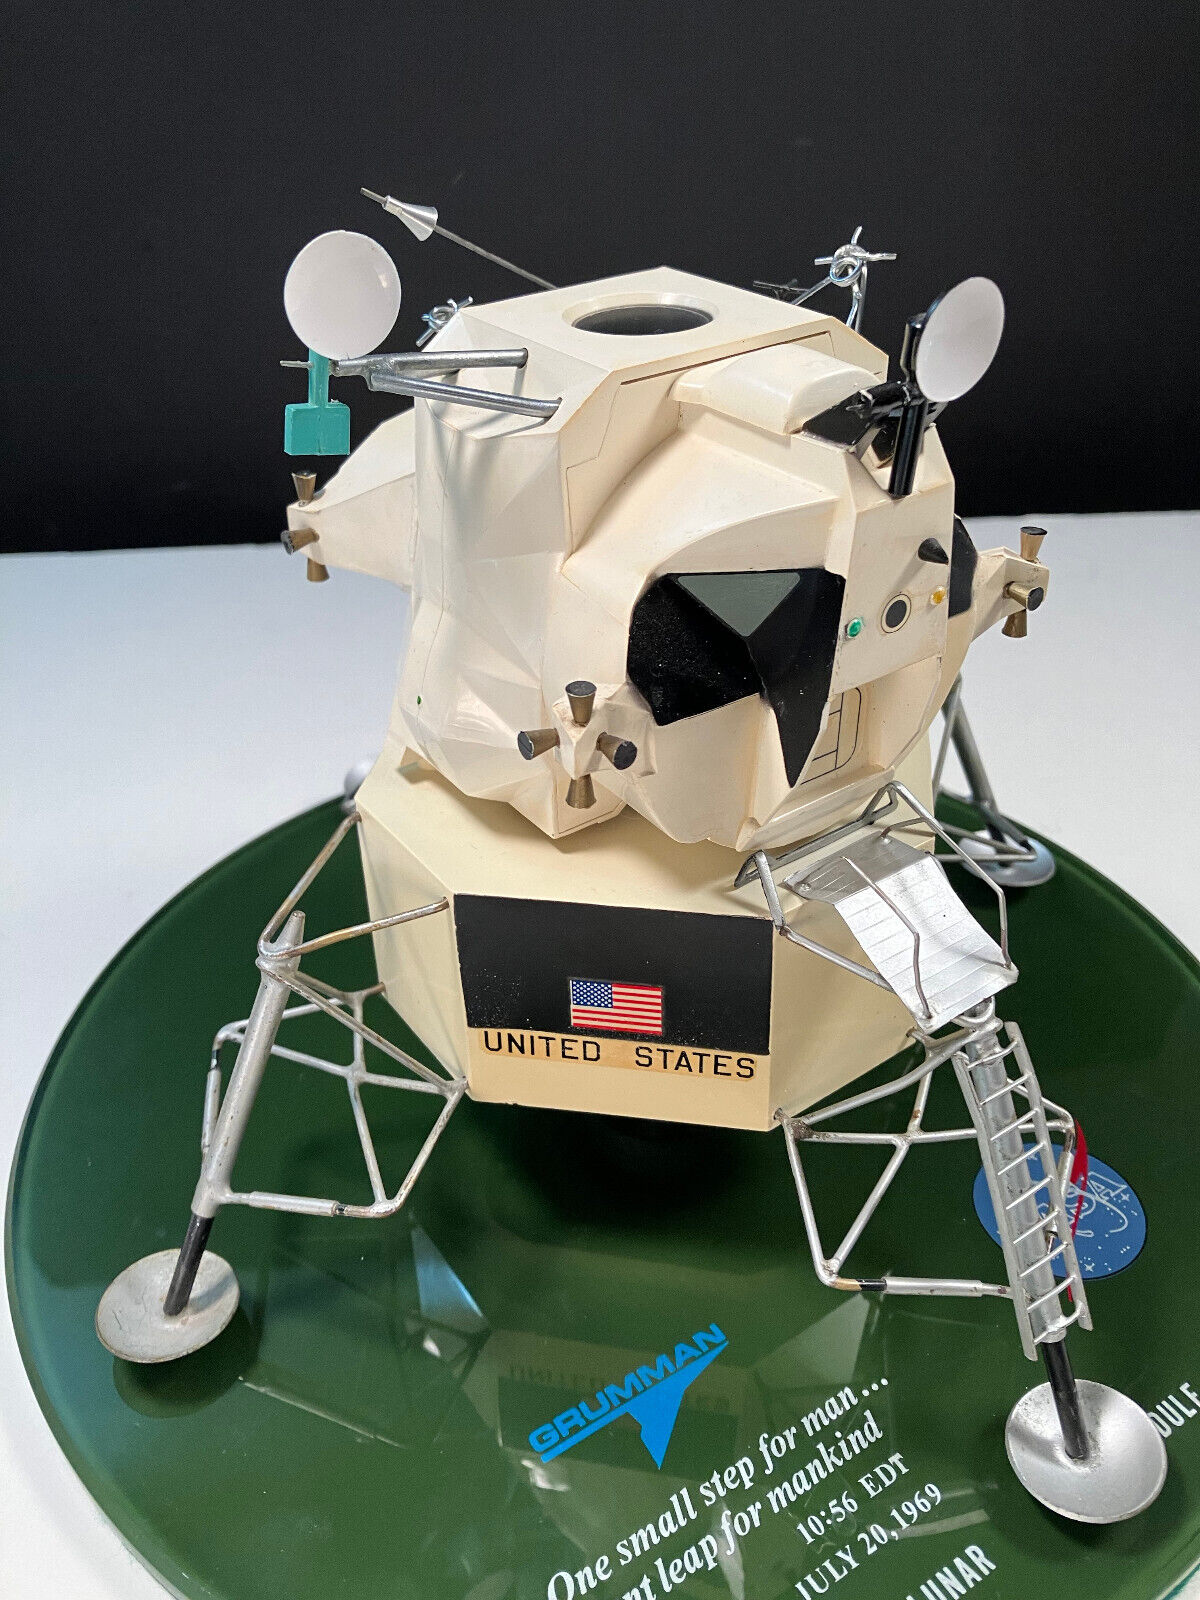 Topping Models Grumman Lunar Module NASA Apollo Model